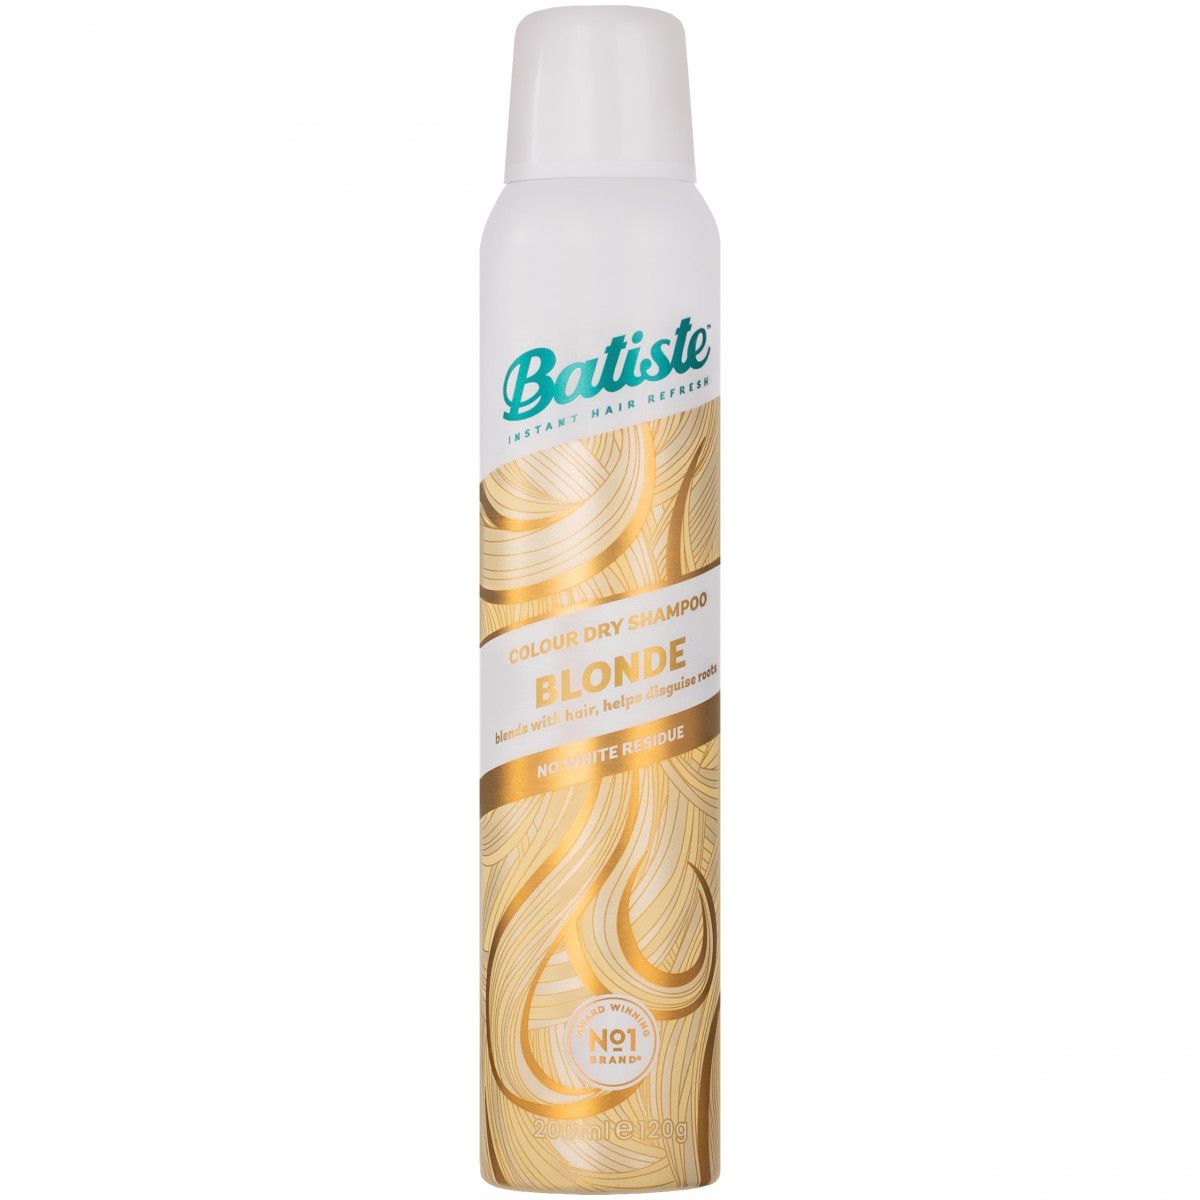 Batiste Dry Shampoo a hint of colour for Blondes, odświeżający suchy szampon dla blondynek 200ml